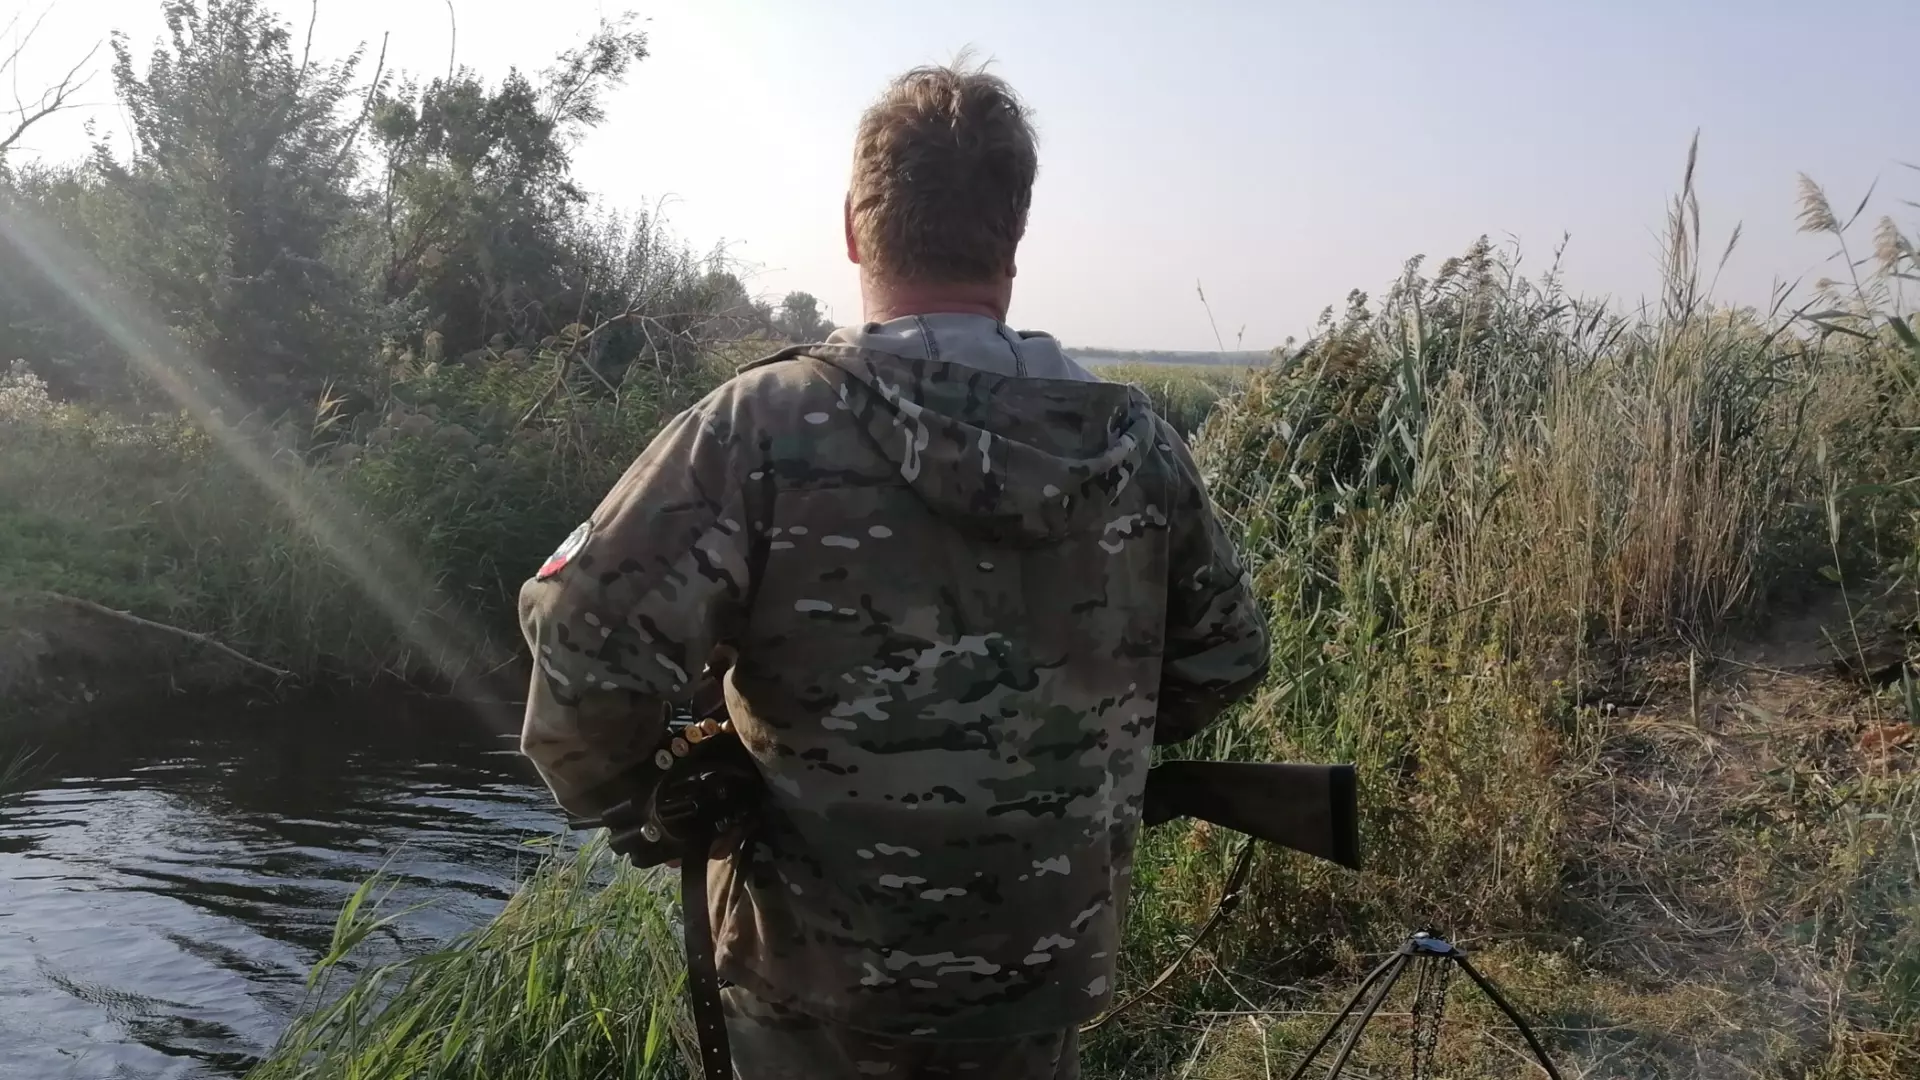 Жители пожаловались на браконьеров, которые охотятся с квадрокоптером под Ростовом